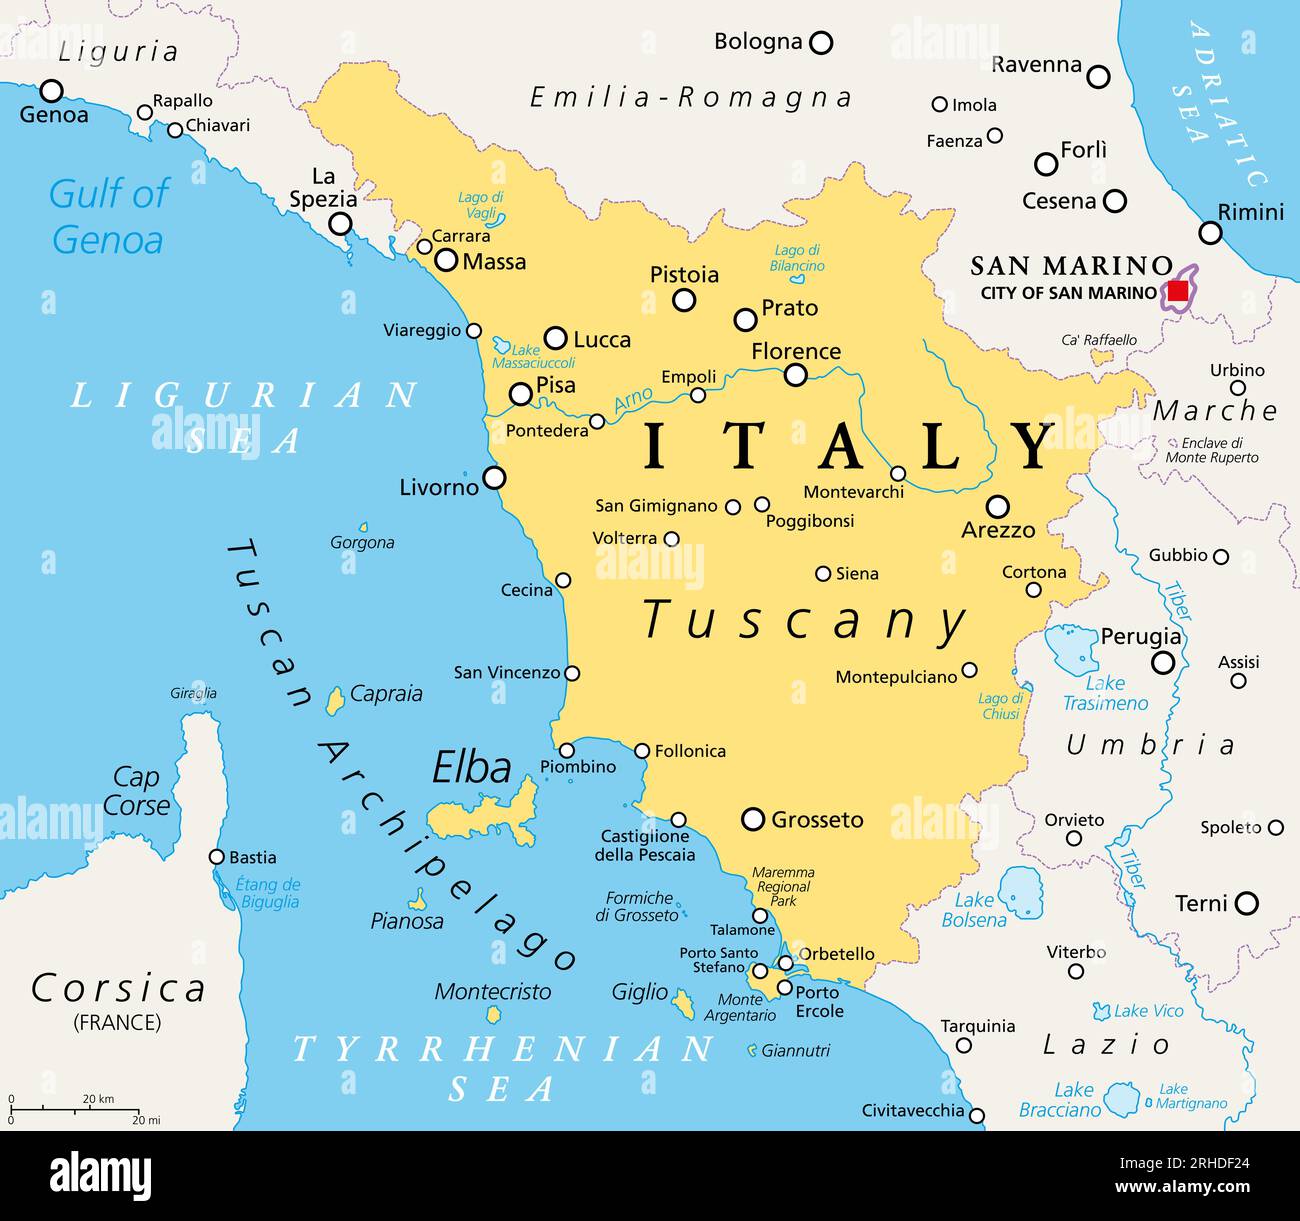 Toscana, región en el centro de Italia, mapa político con muchos puntos turísticos populares como Florencia, Castiglione della Pescaia, Pisa, Grosseto y Siena. Foto de stock